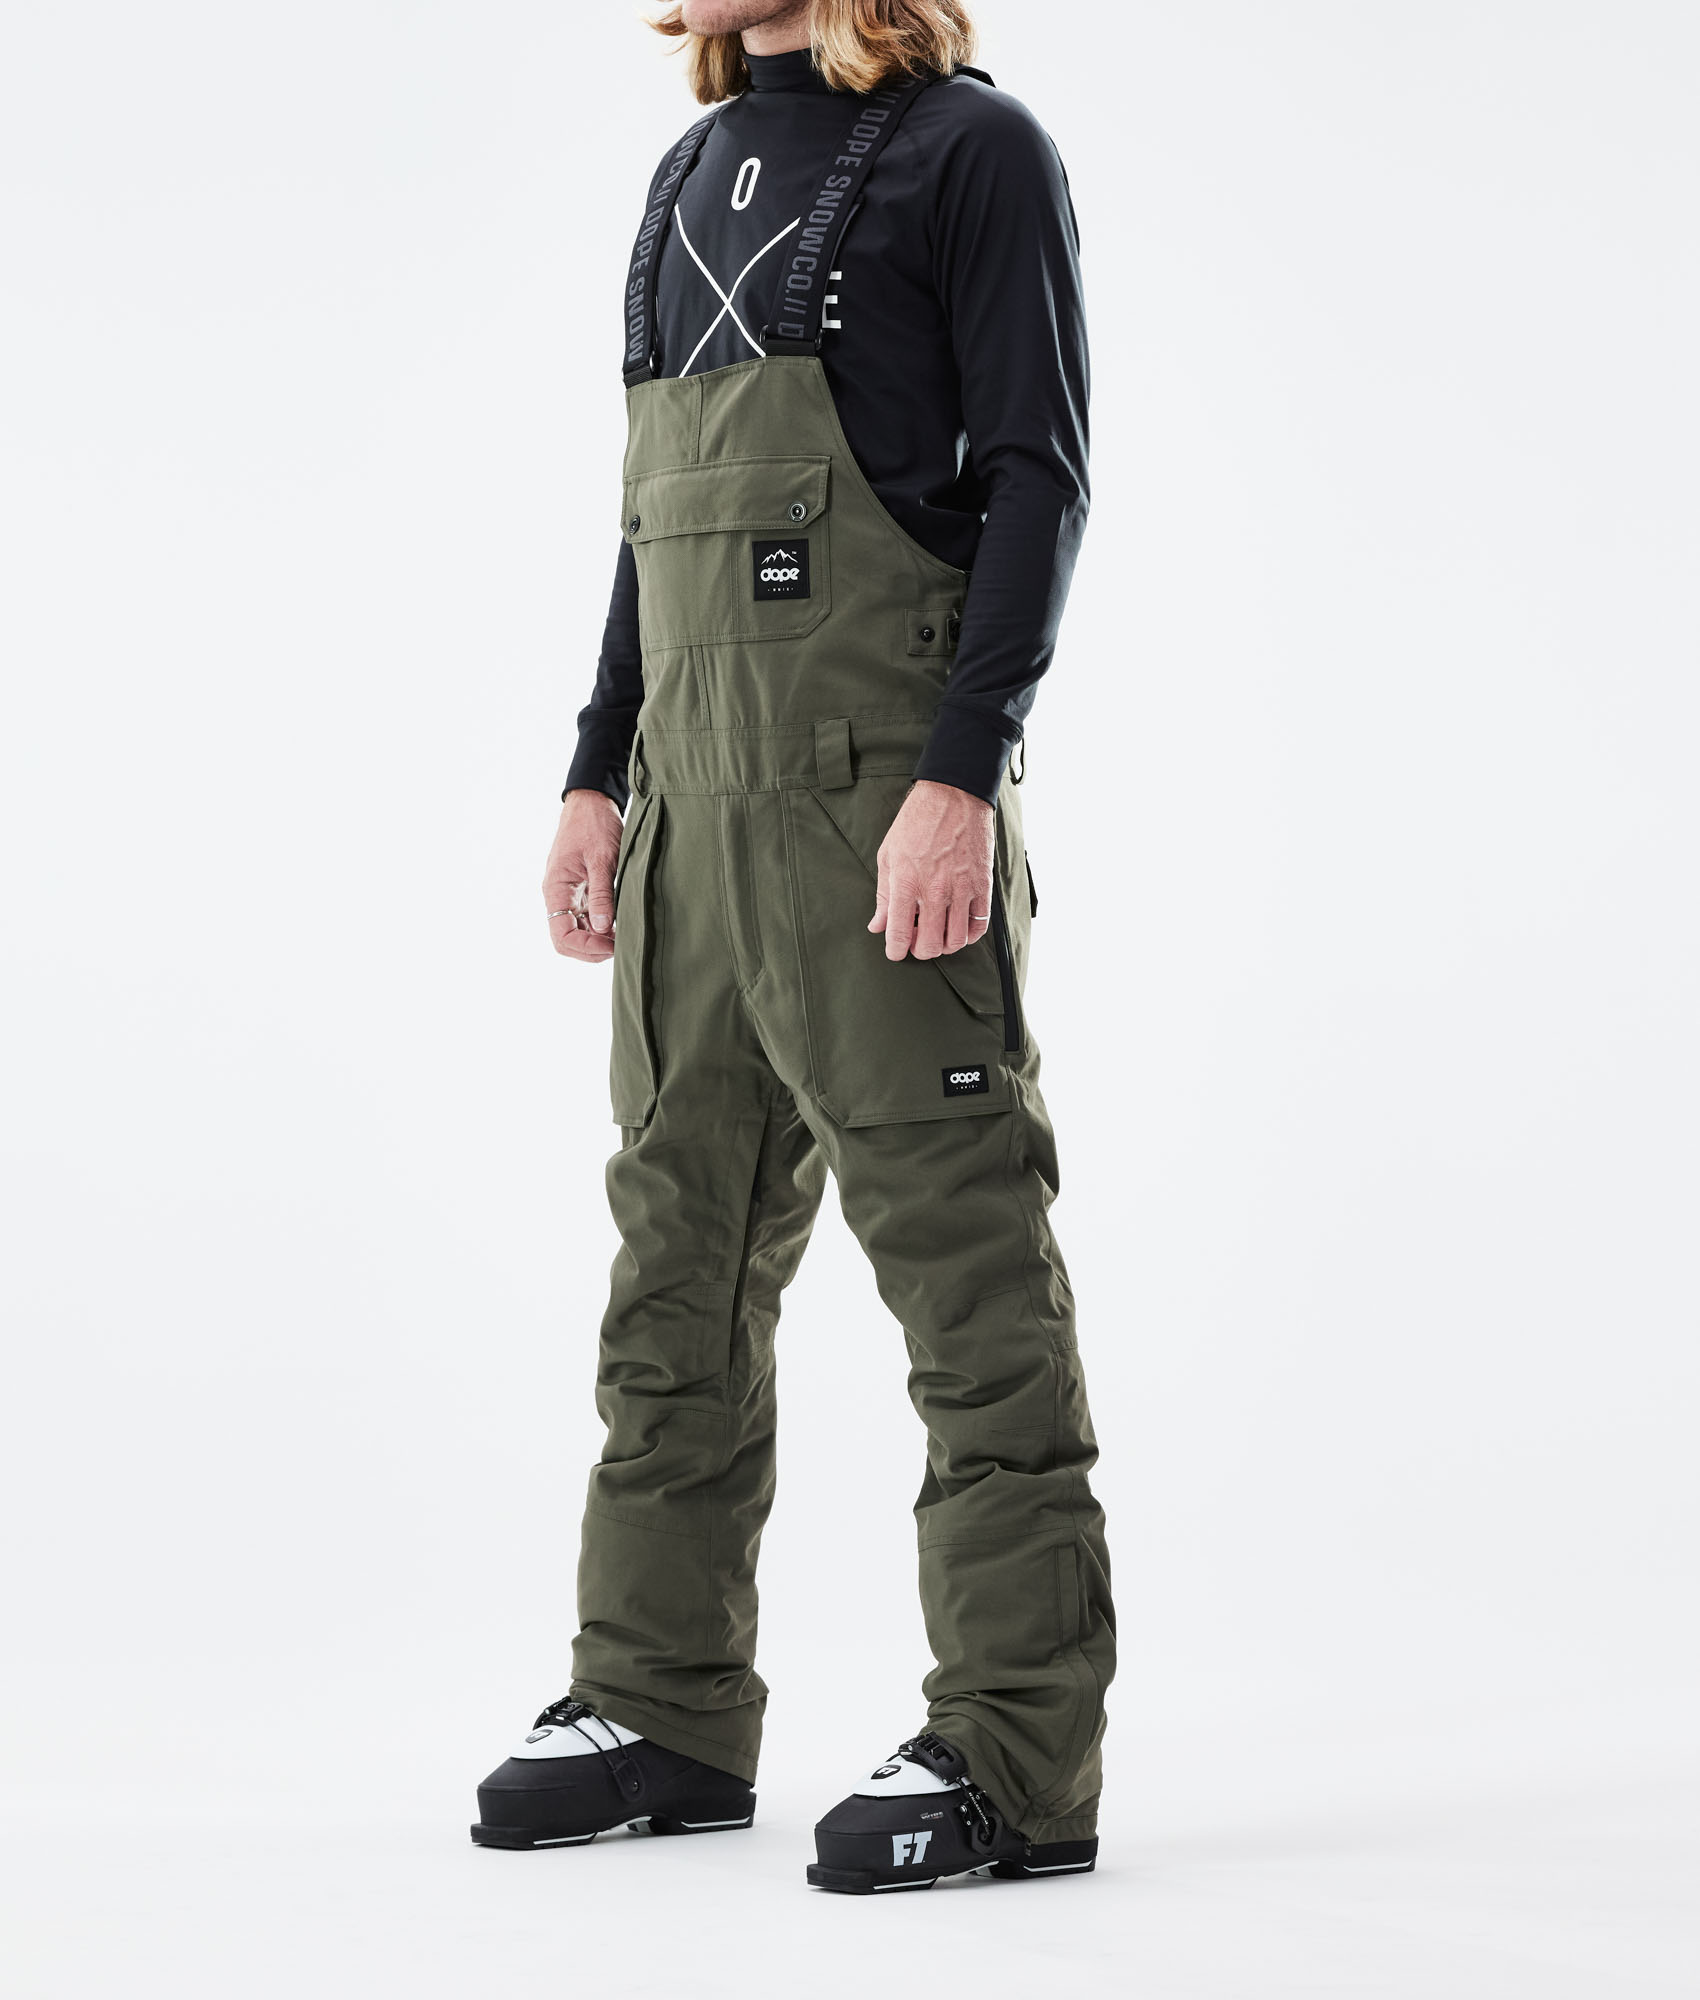 greenclothing bib pants S turquoise 2019